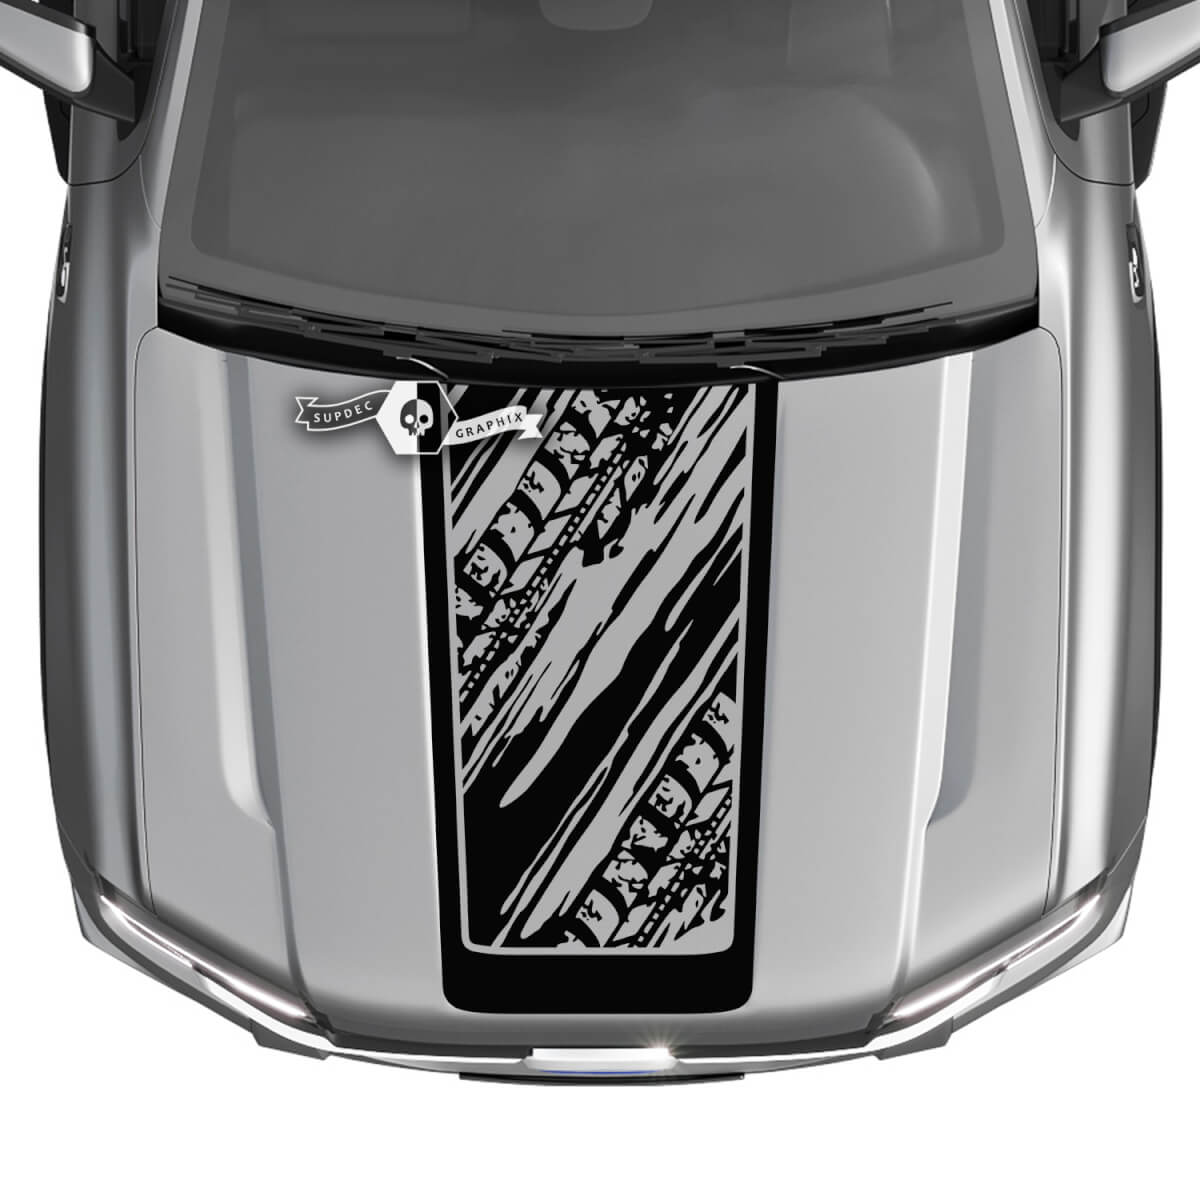 Ford Ranger Heckhaube, LKW-Streifen, Logo, Schlammreifenspuren, zerstörte Grafikaufkleber
